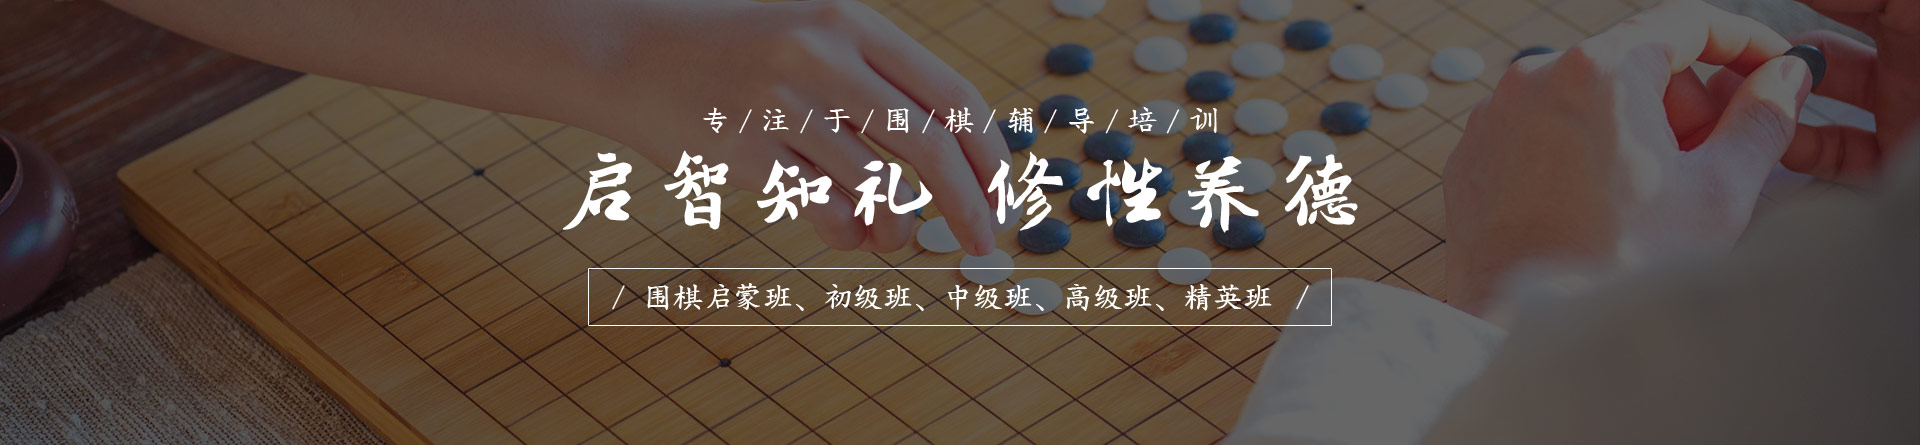 佛山清風棋文化教育